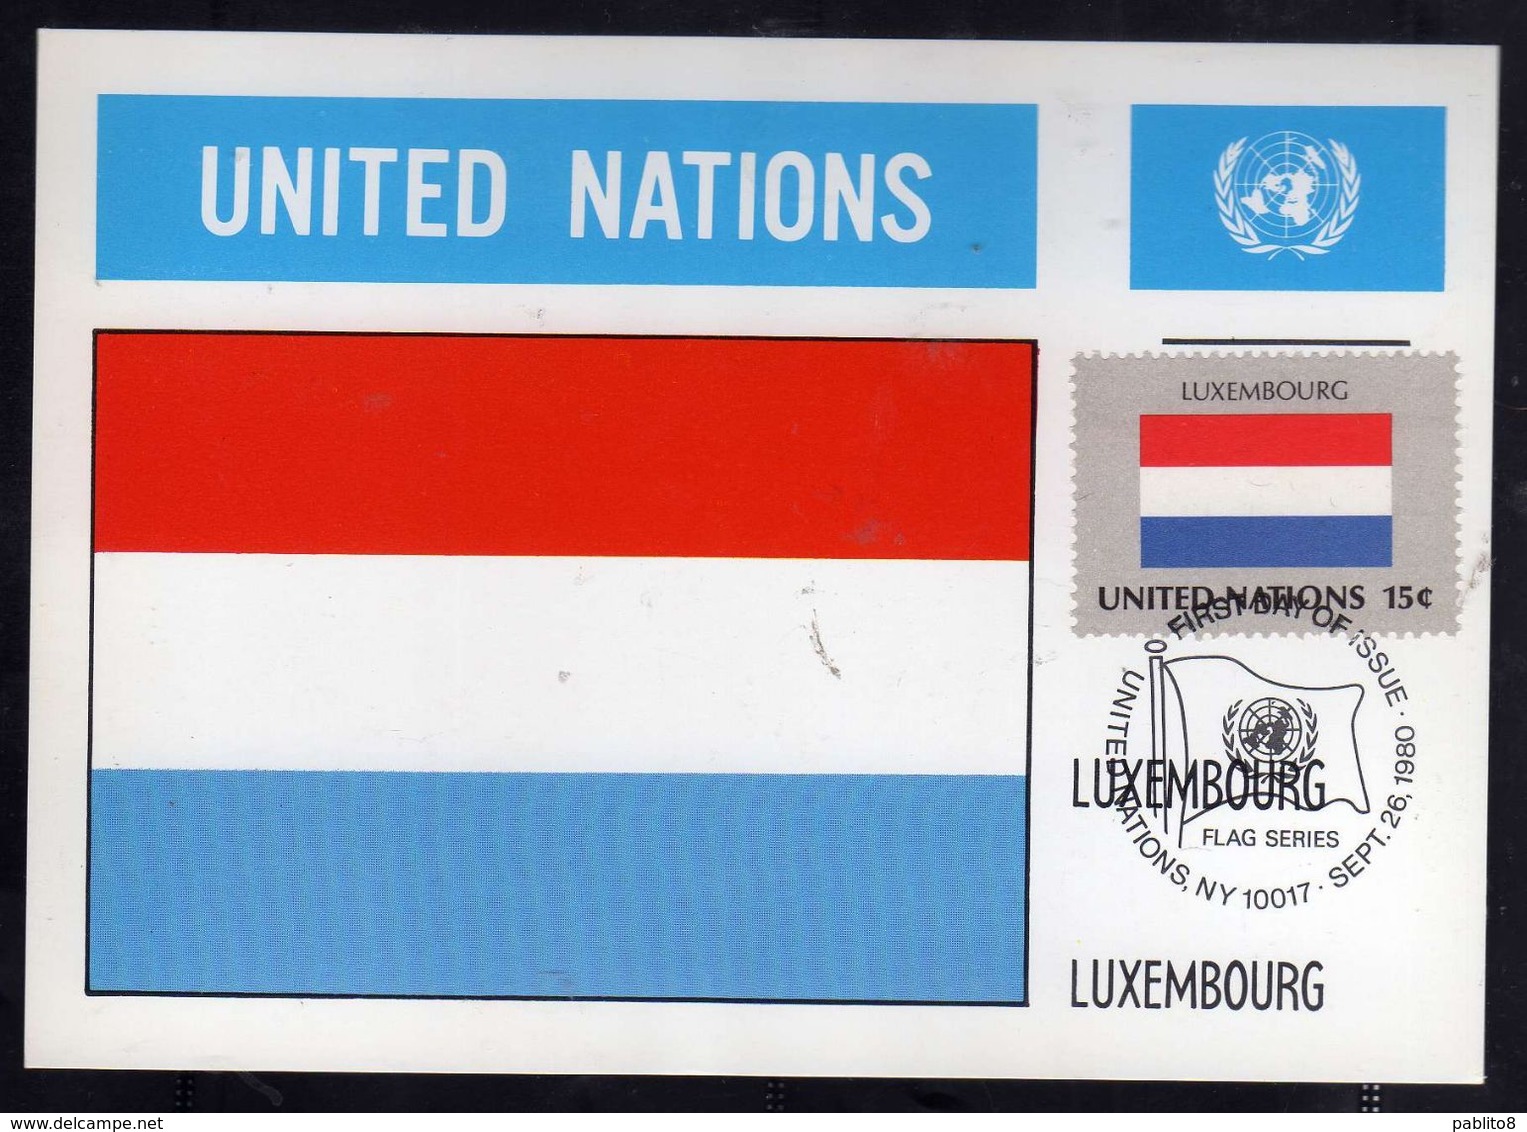 UNITED NATIONS NEW YORK ONU UN UNO 26 9 1980 FLAGS LUXEMBOURG LUSSEMBURGO FDC MAXI CARD CARTOLINA MAXIMUM - Cartes-maximum